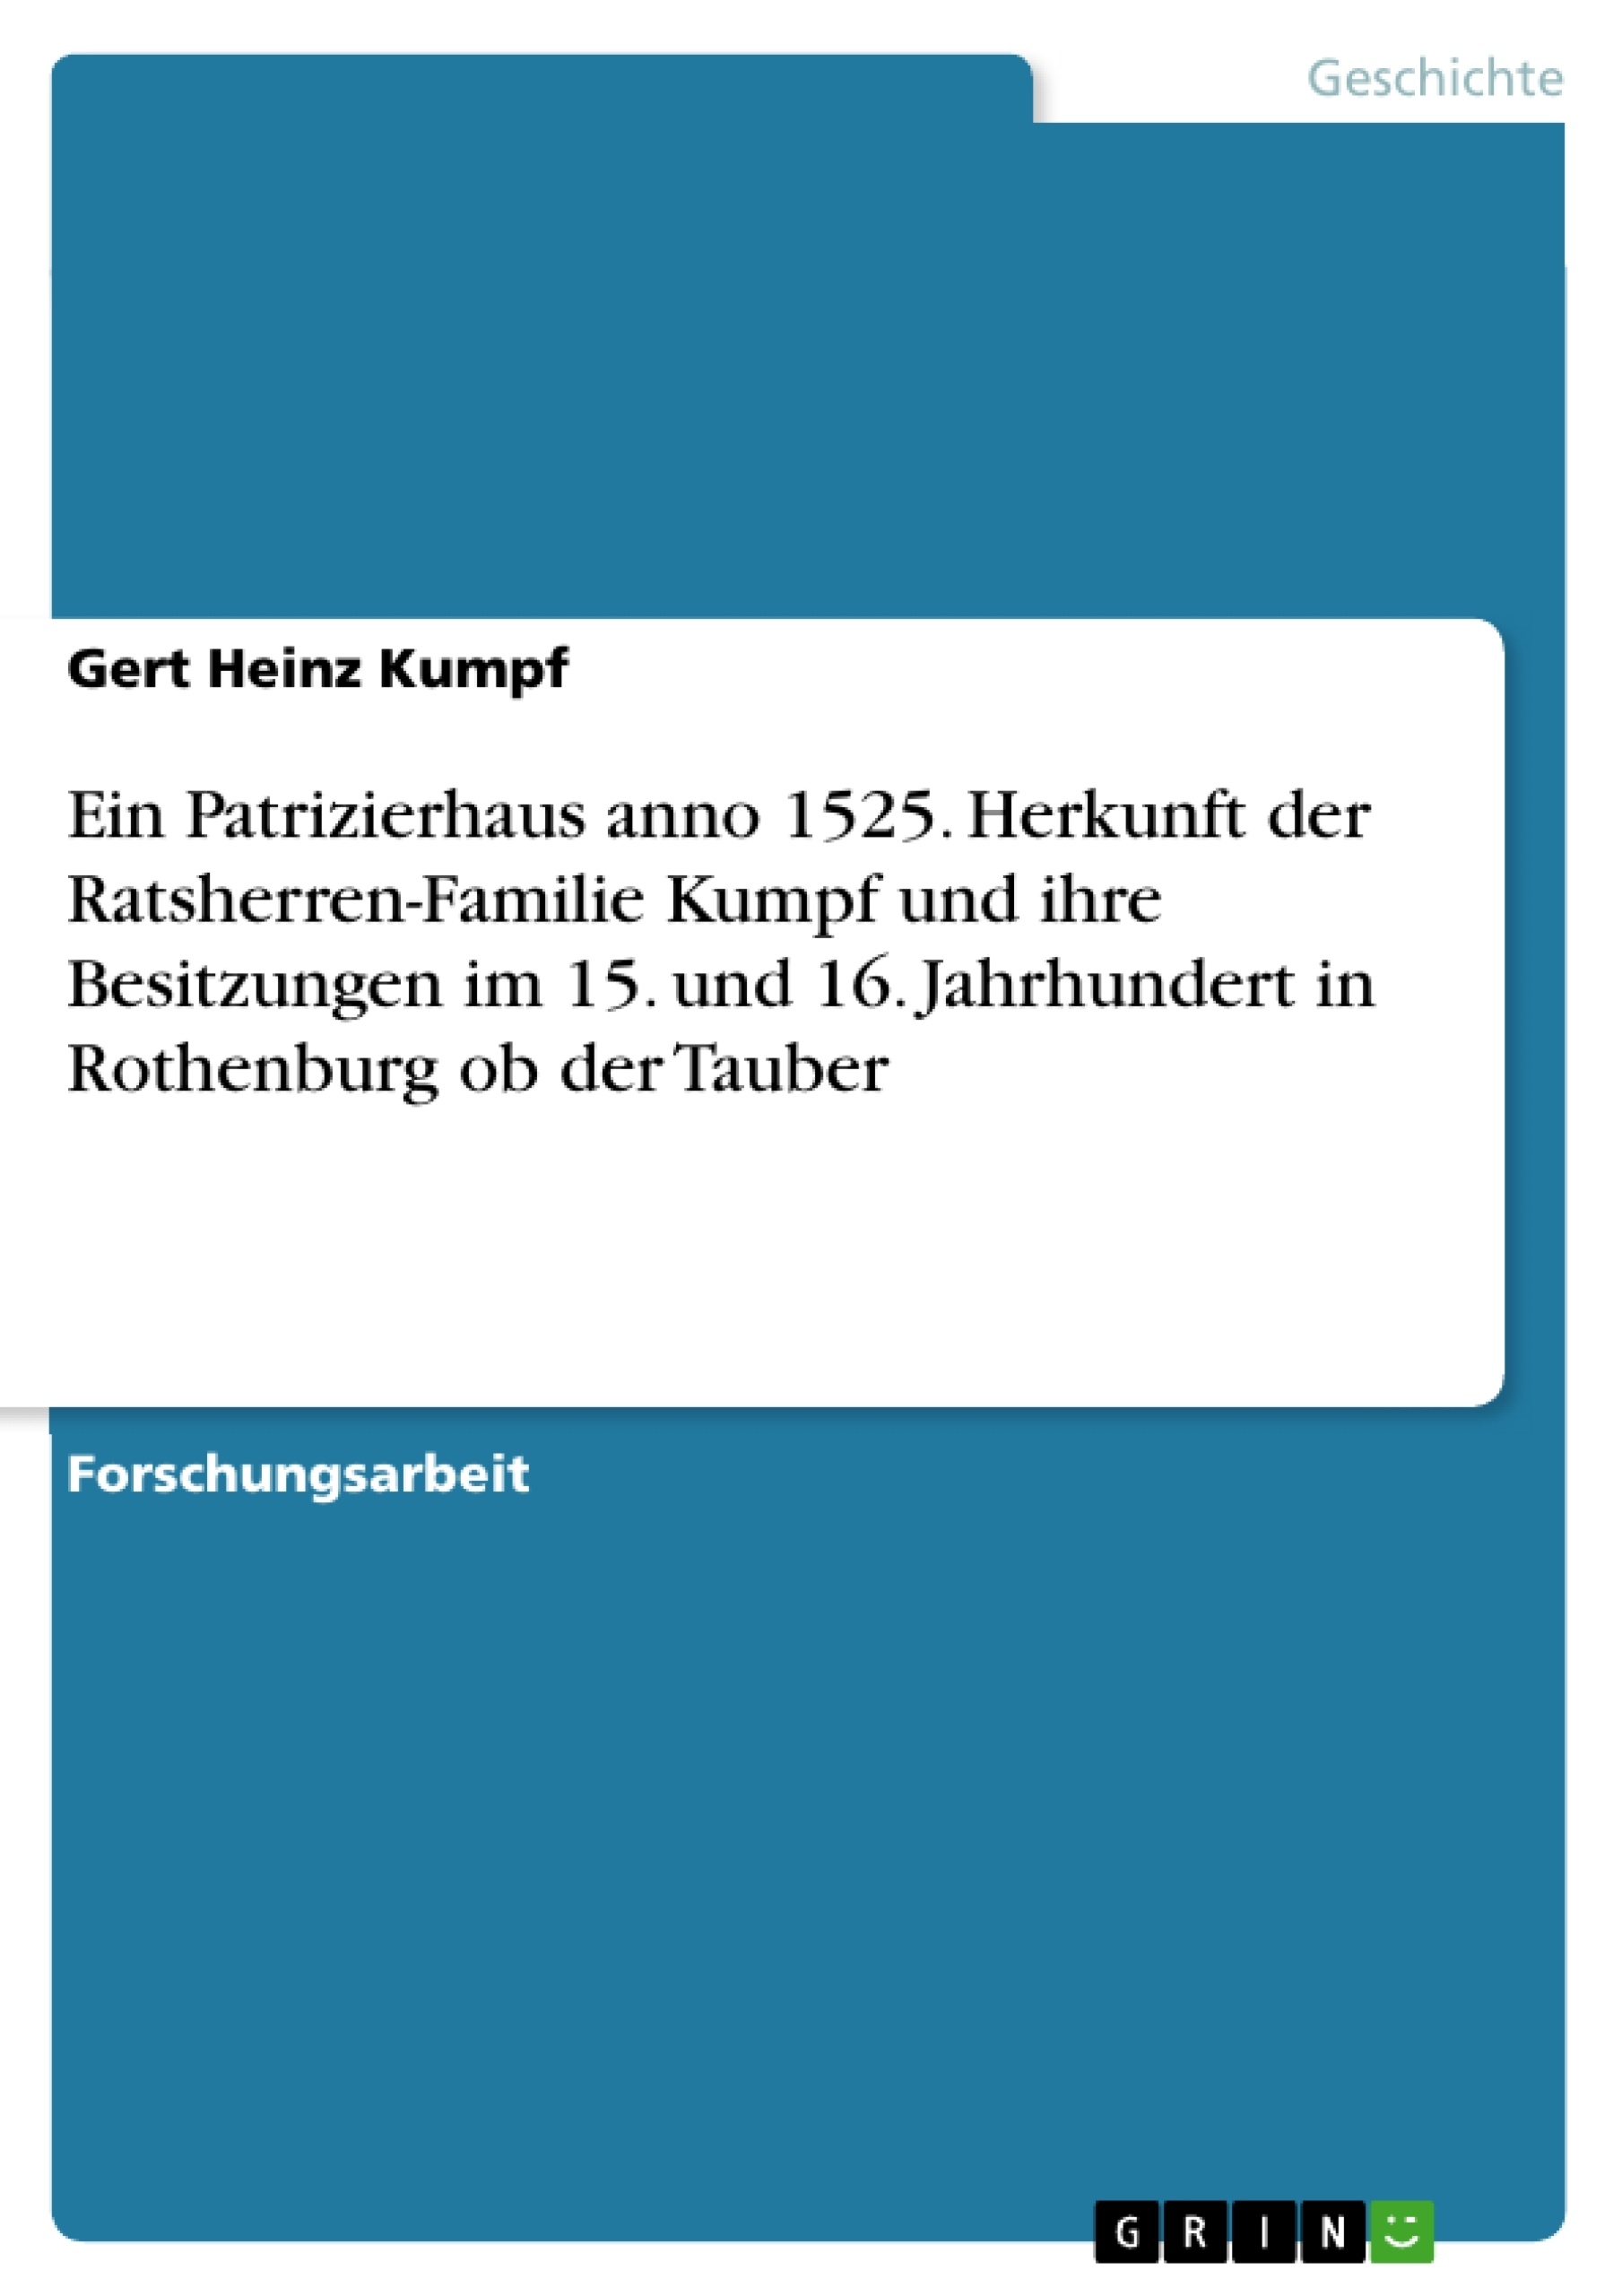 Título: Ein Patrizierhaus anno 1525. Herkunft der Ratsherren-Familie Kumpf und ihre Besitzungen im 15. und 16. Jahrhundert in Rothenburg ob der Tauber